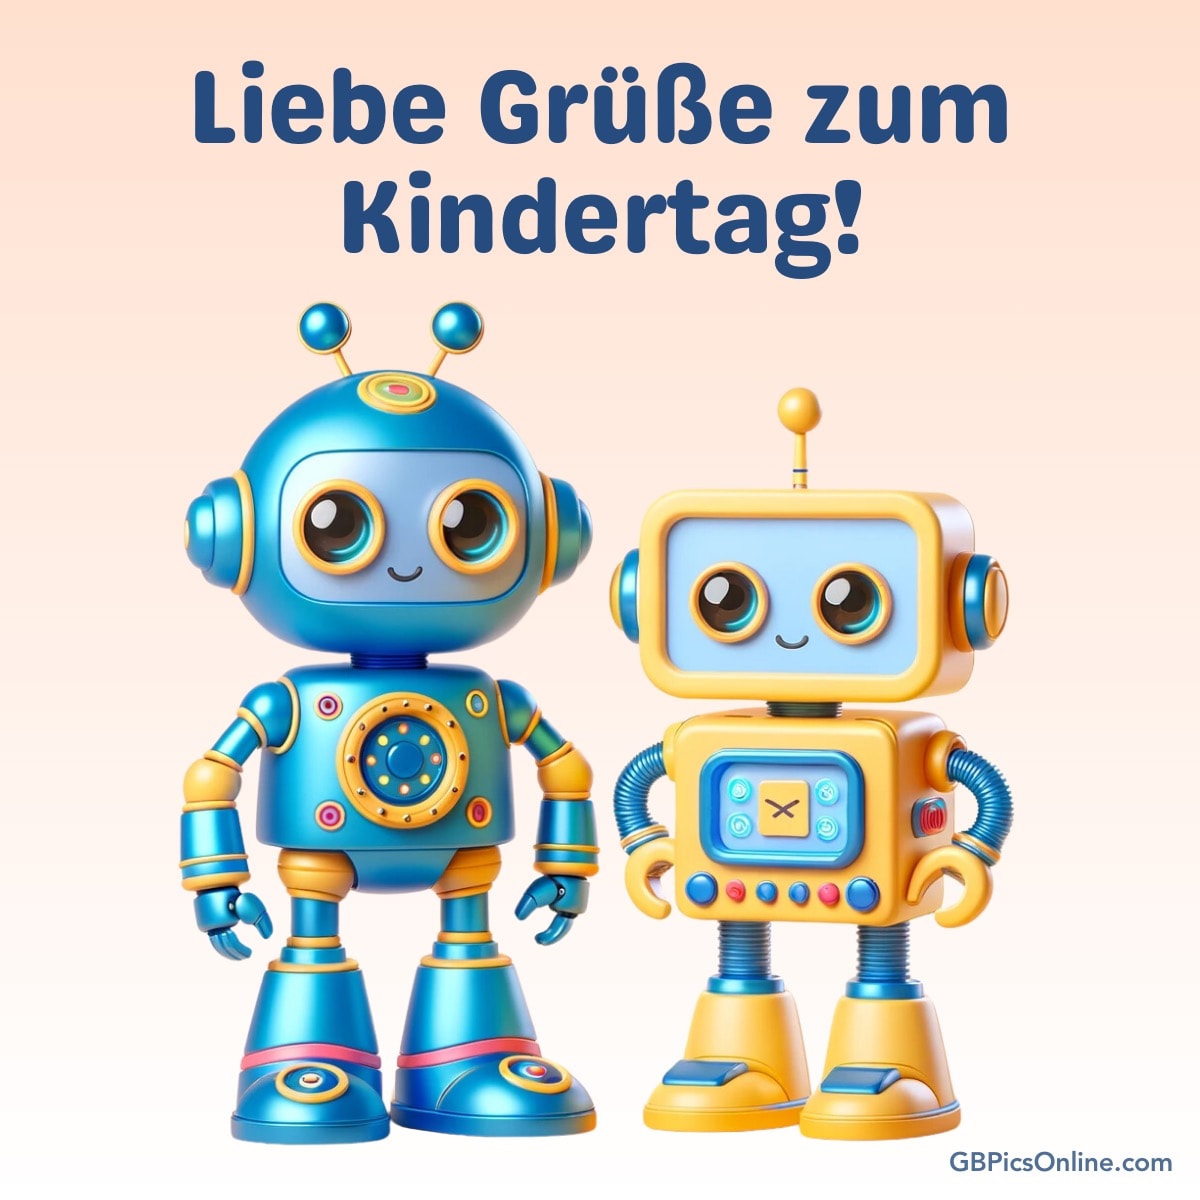 Zwei niedliche Roboter stehen nebeneinander, Text oben: „Liebe Grüße zum Kindertag!“